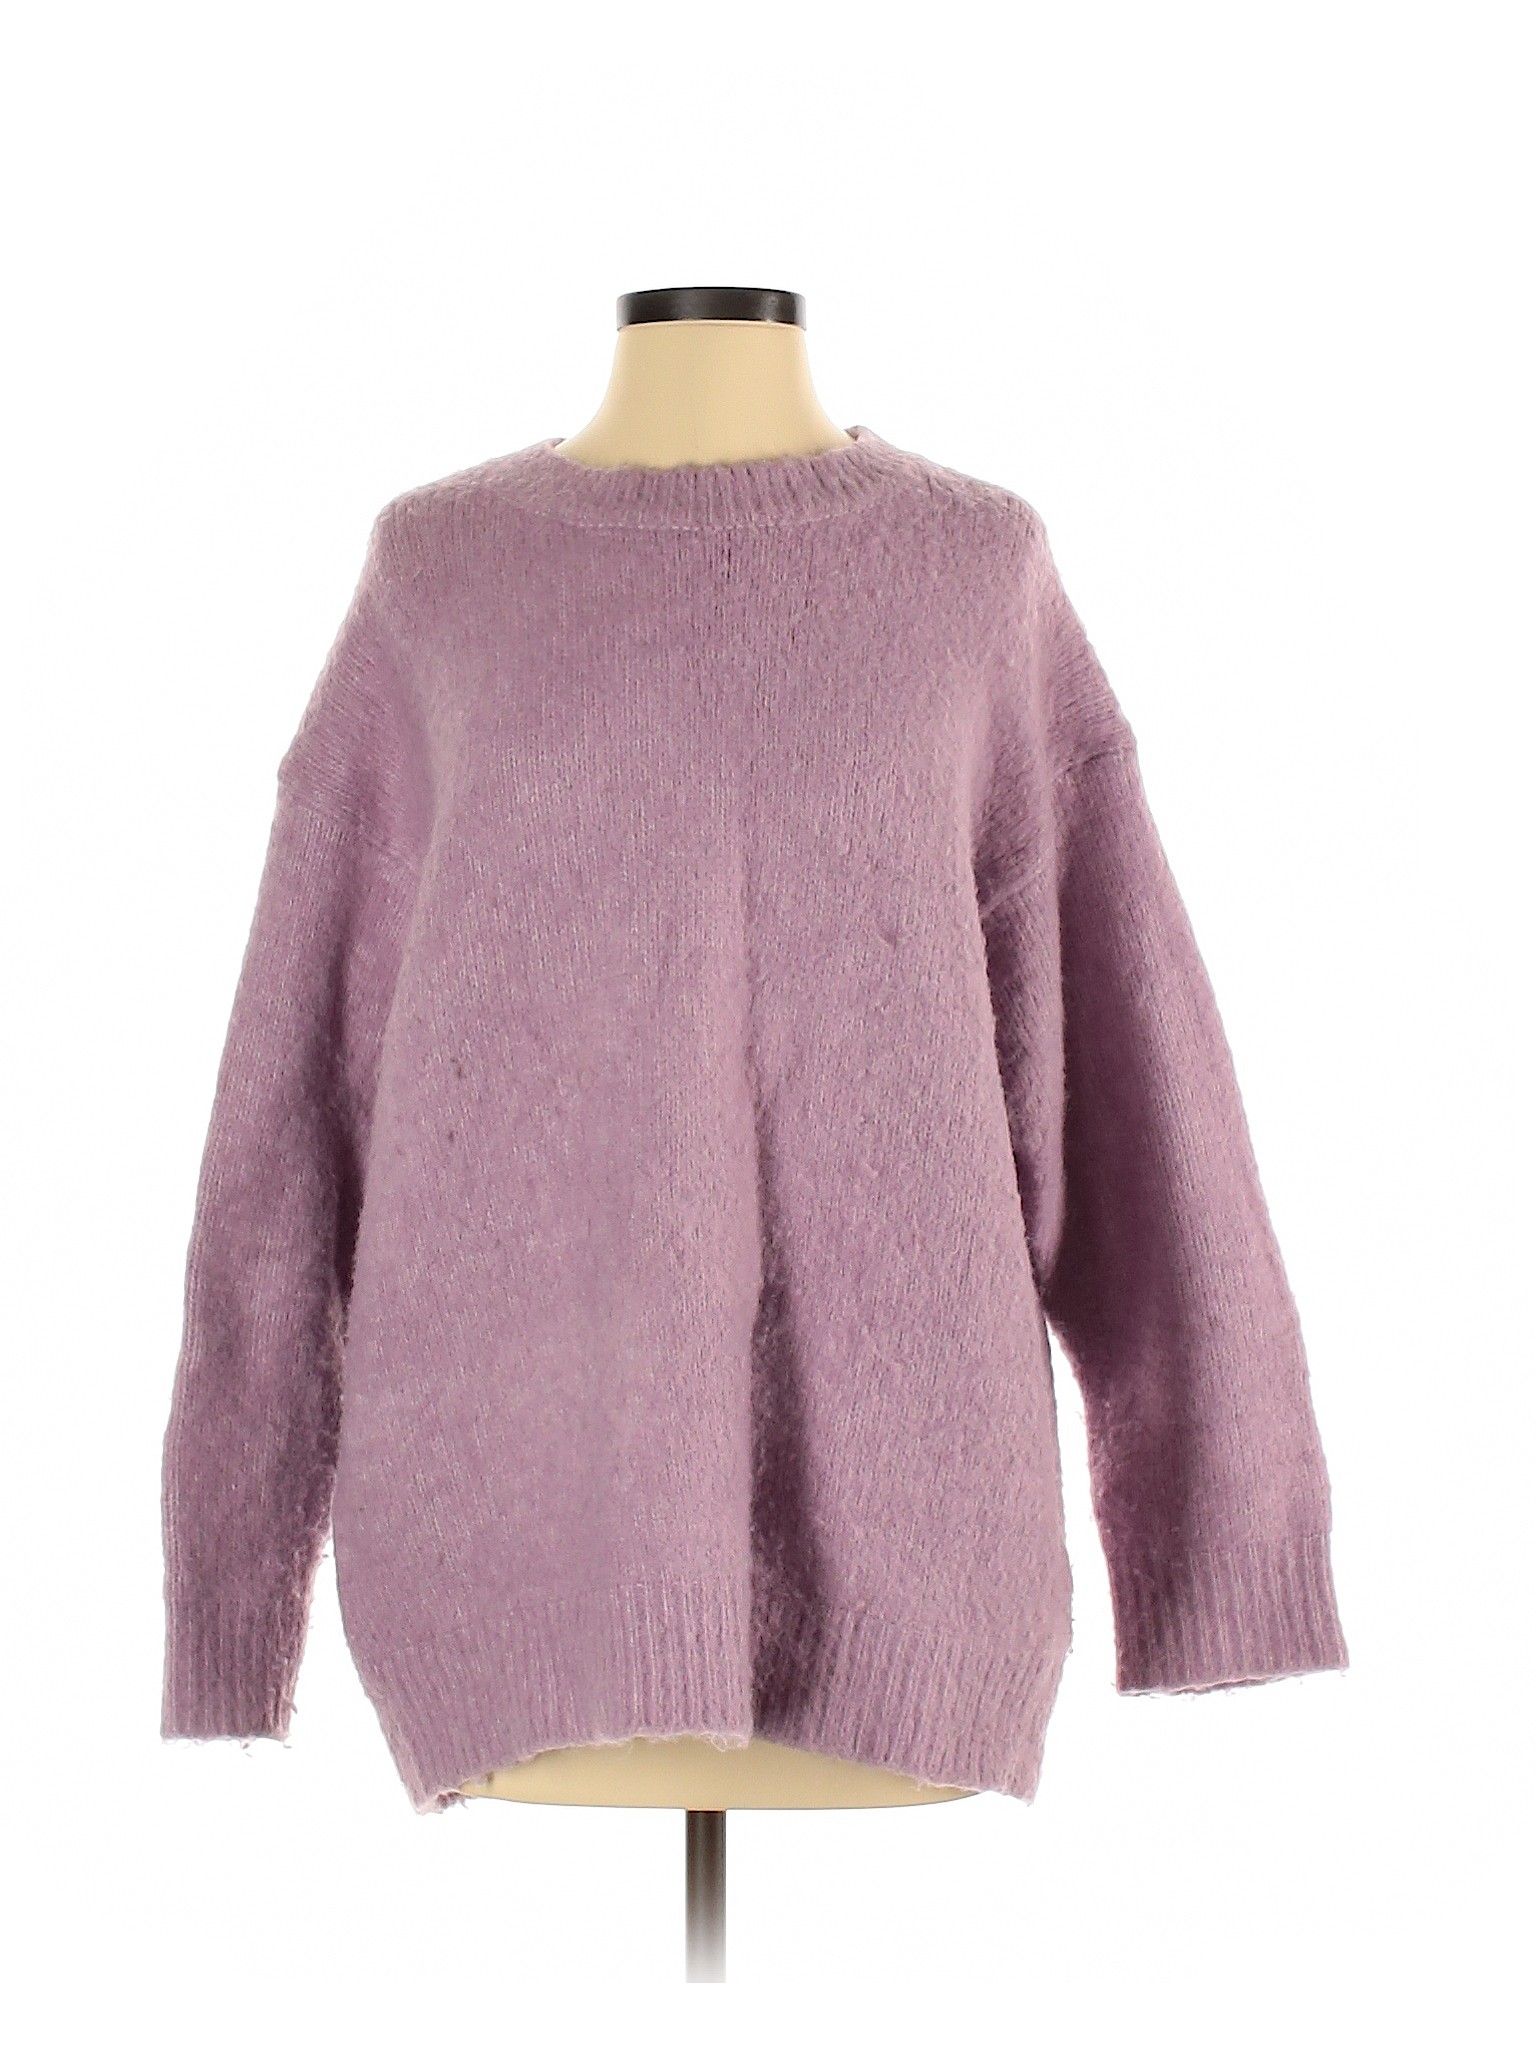 Zara Women Purple Pullover Sweater S | eBay